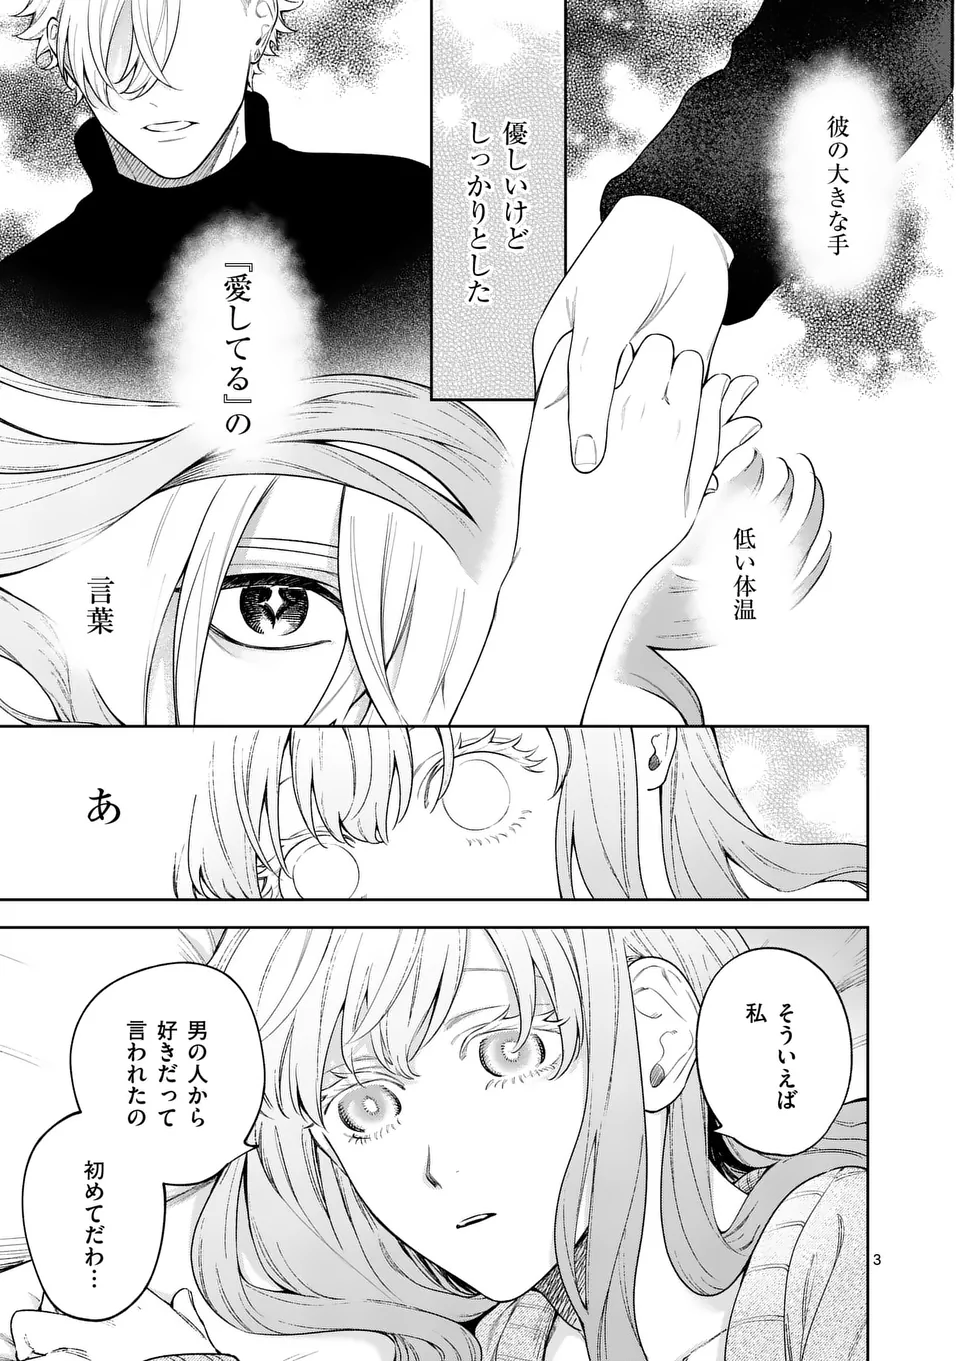 Mou Kyoumi ga Nai to Rikonsareta Reijou no Igai to Tanoshii Shinseikatsu - Chapter 11.1 - Page 3